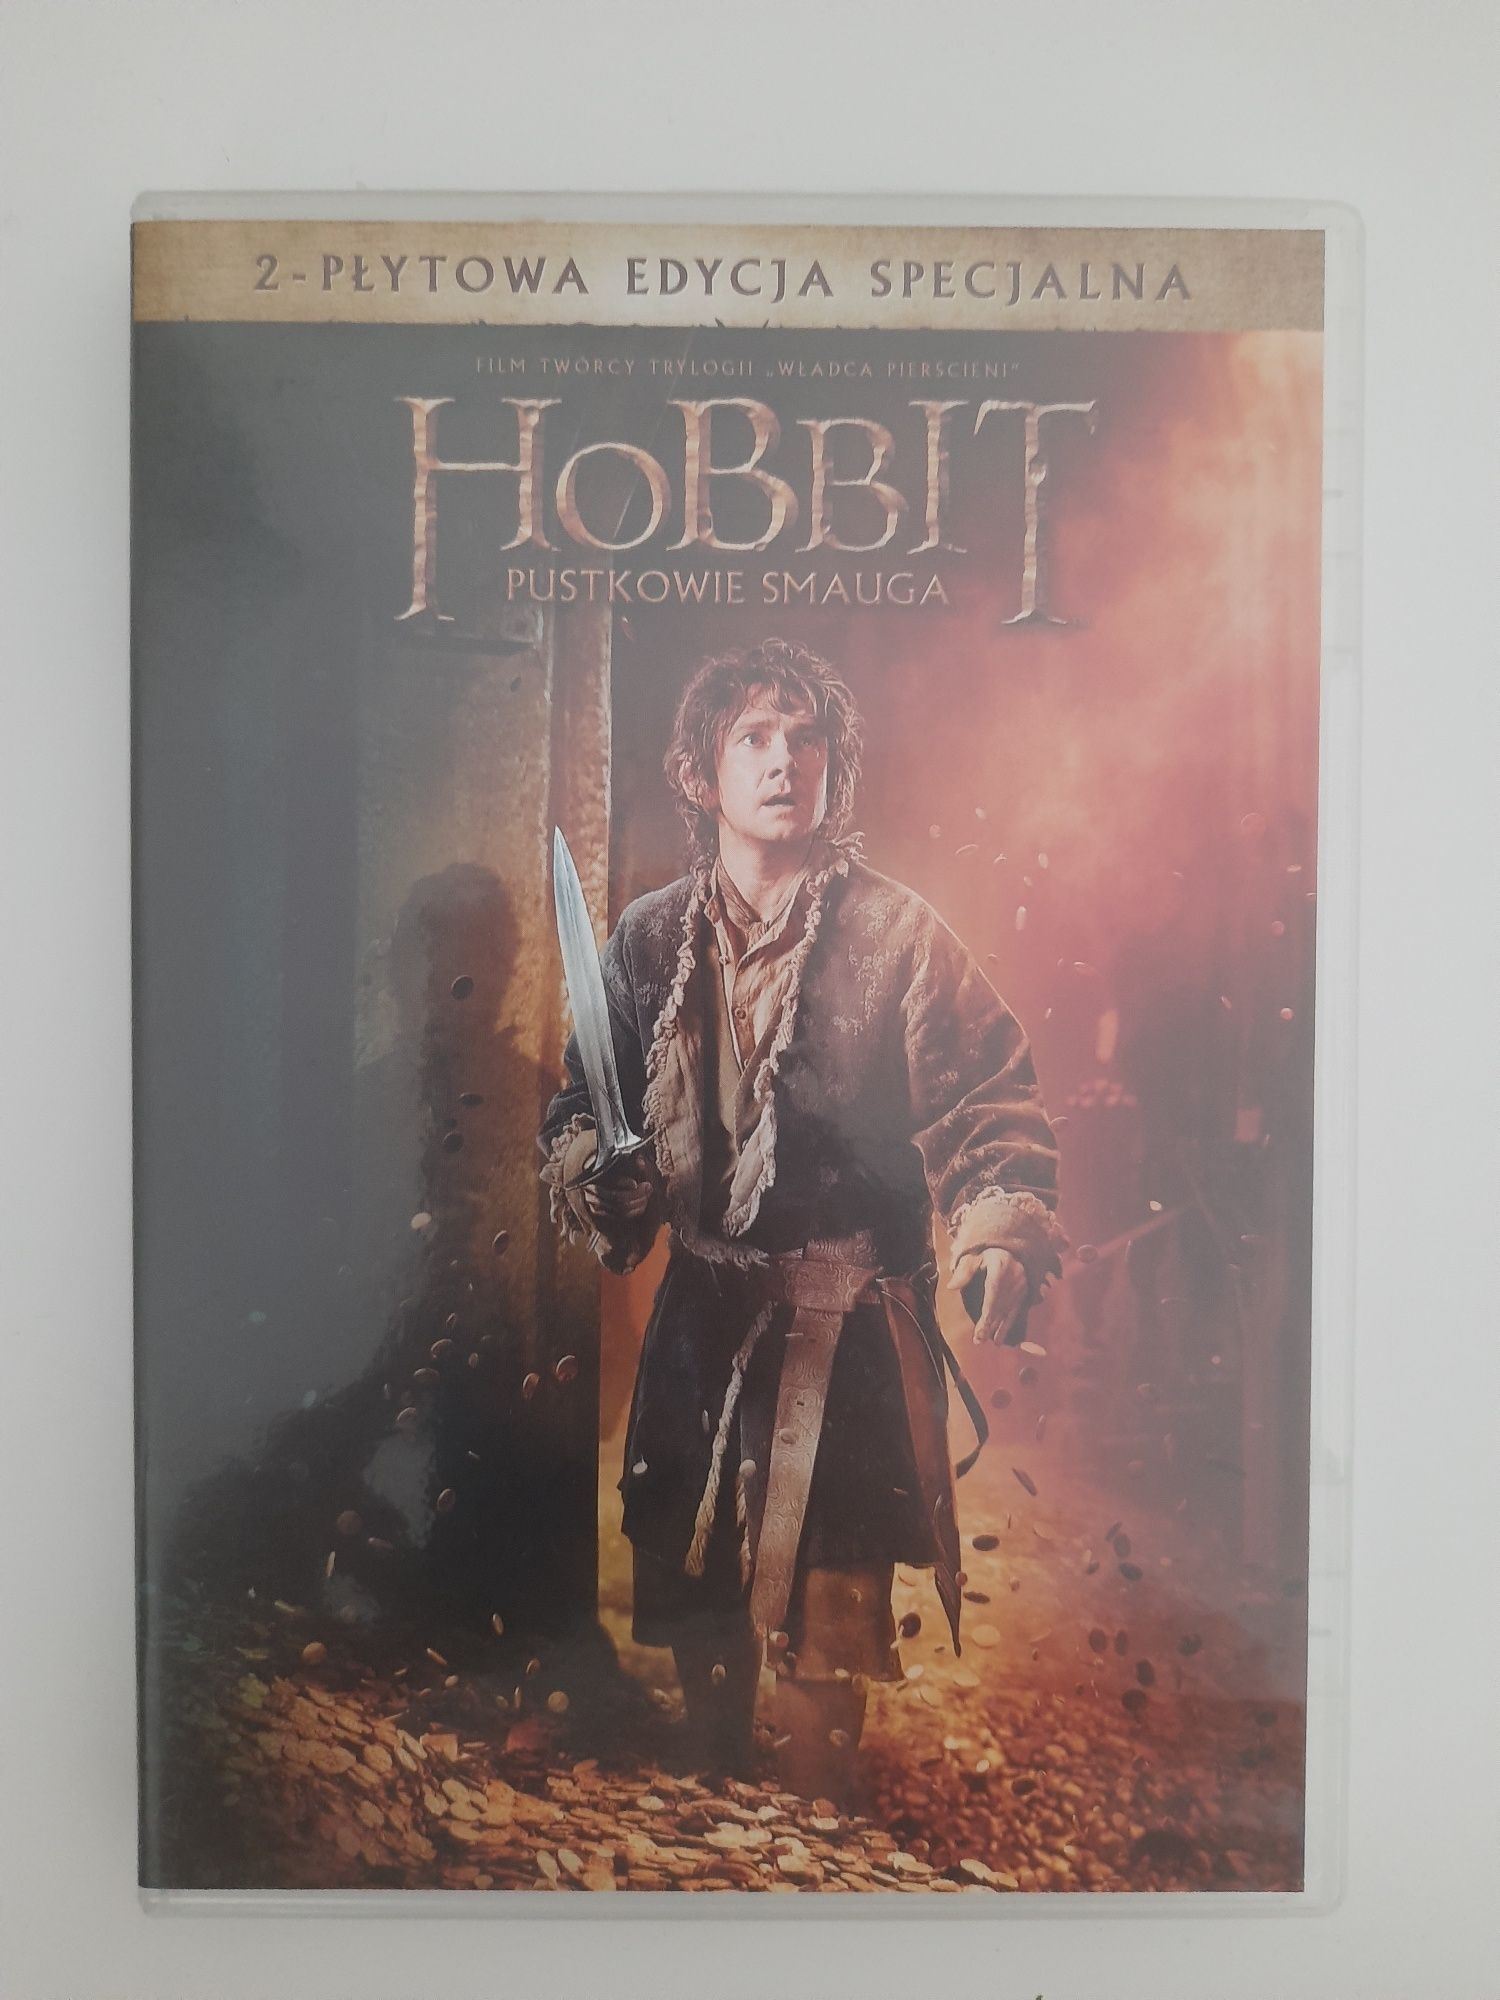 Hobbit pustkowie Smauga 2-plytowa edycja